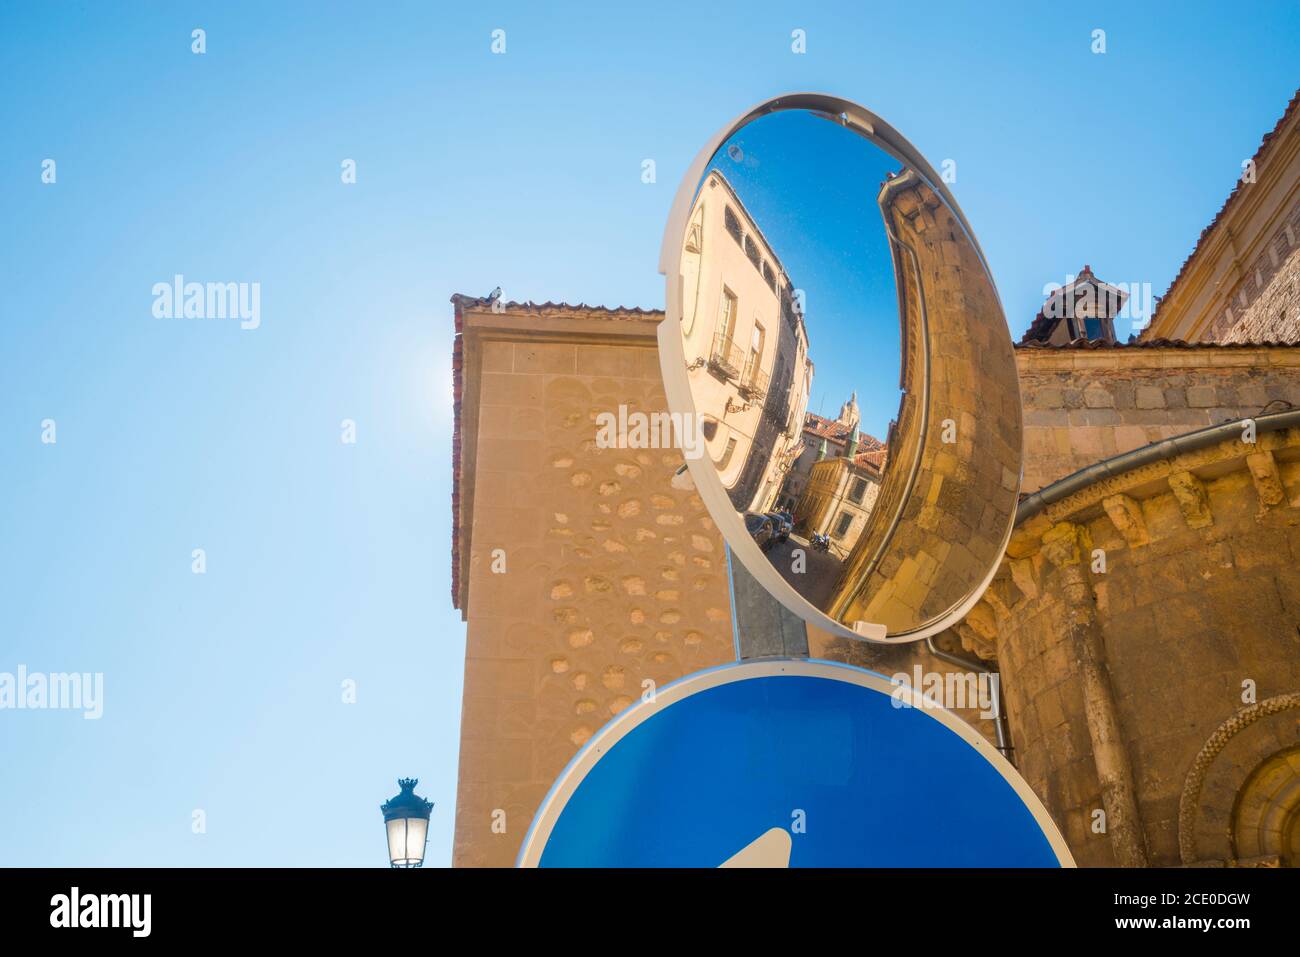 City reflected on street mirror. Segovia, Spain. Stock Photo